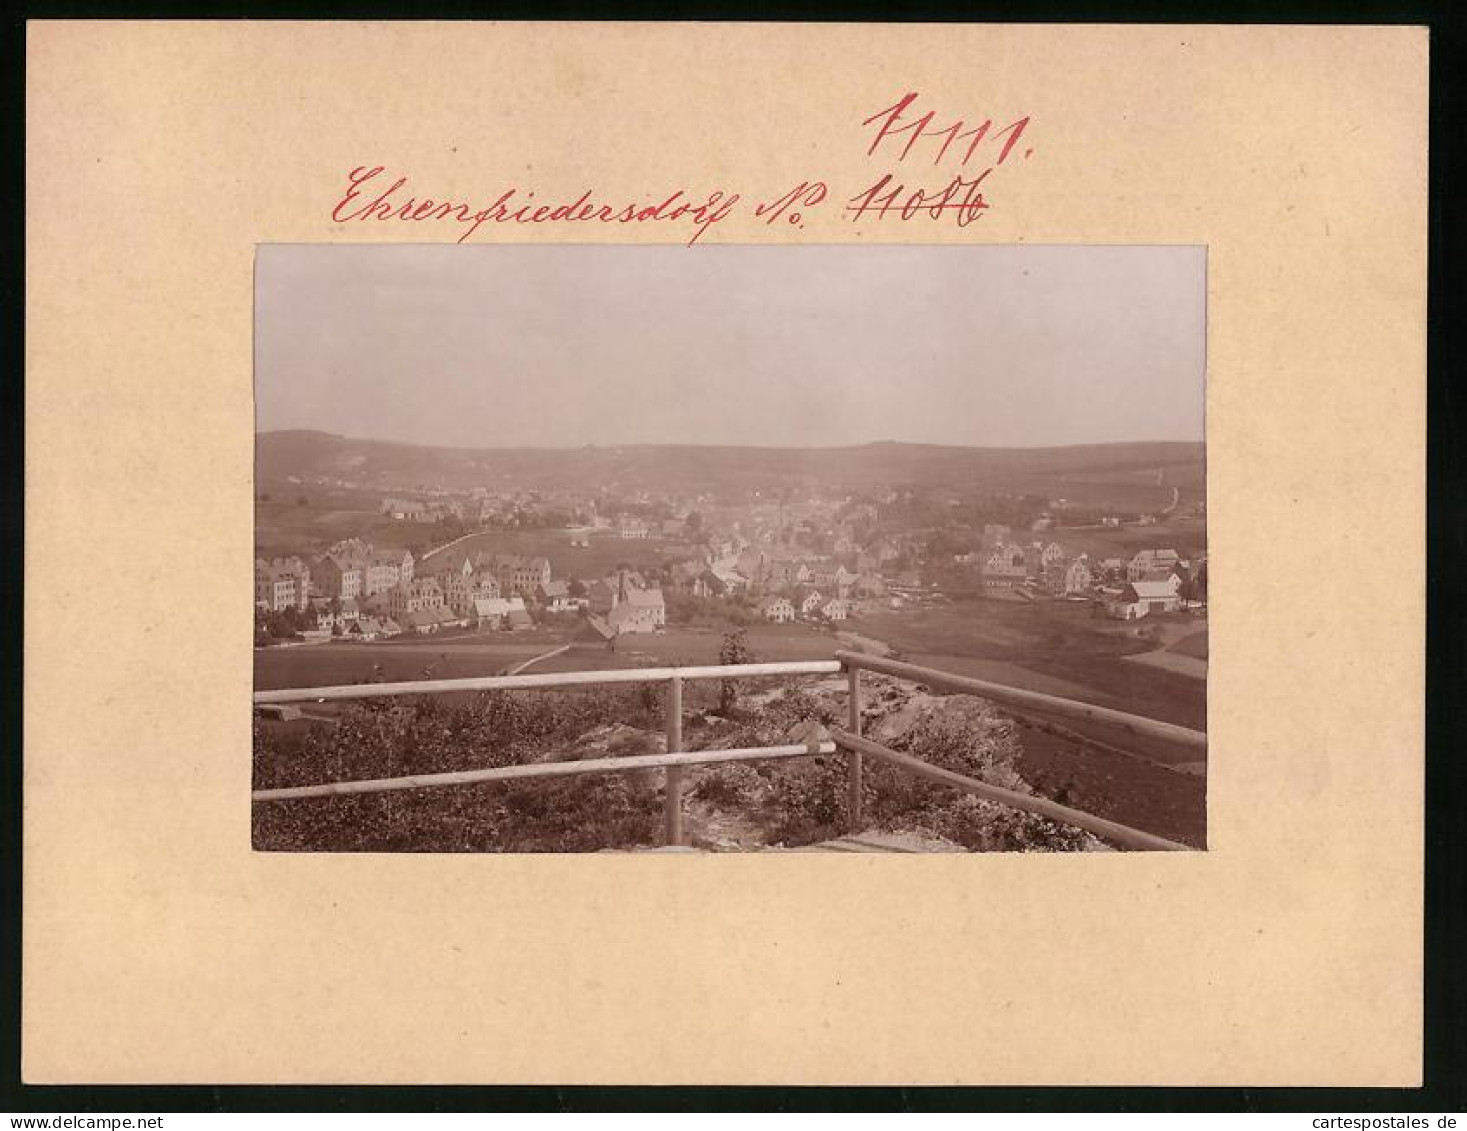 Fotografie Brück & Sohn Meissen, Ansicht Ehrenfriedersdorf, Blick Von Einem Aussichtspunkt  - Lieux